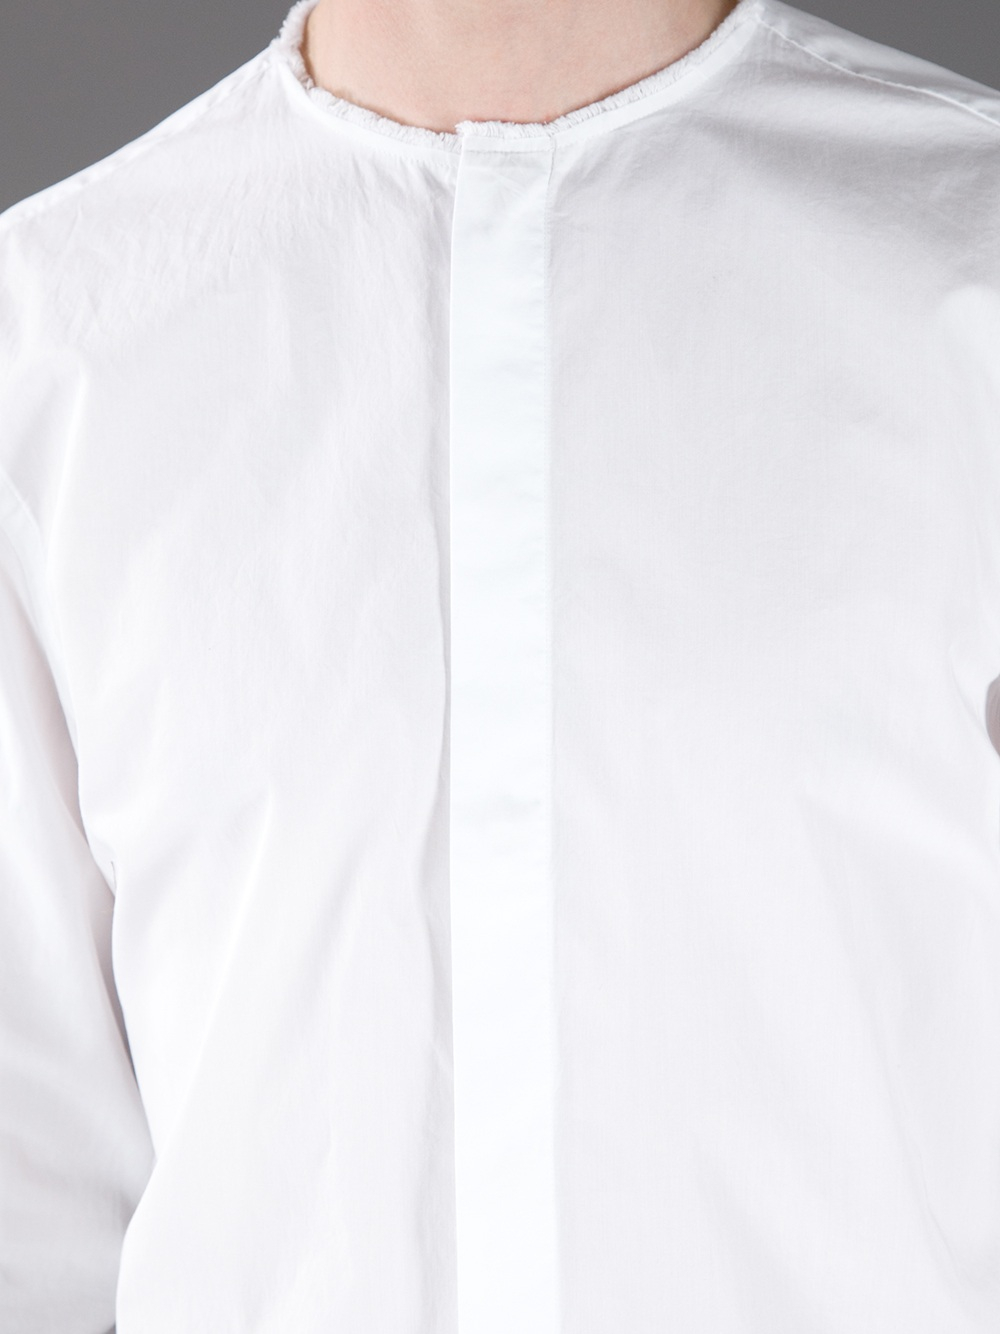 Lyst - Acne Studios Meryl Collarless Shirt in White for Men